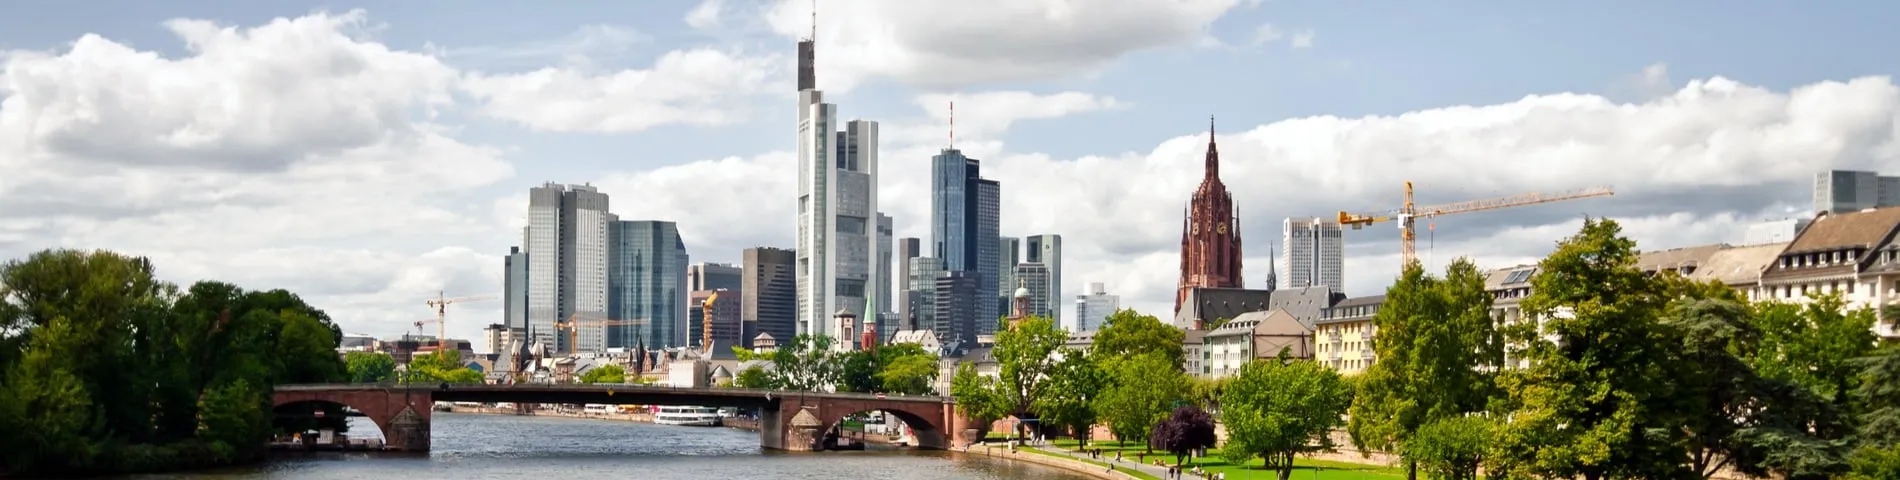 Frankfurt - Curs estàndard